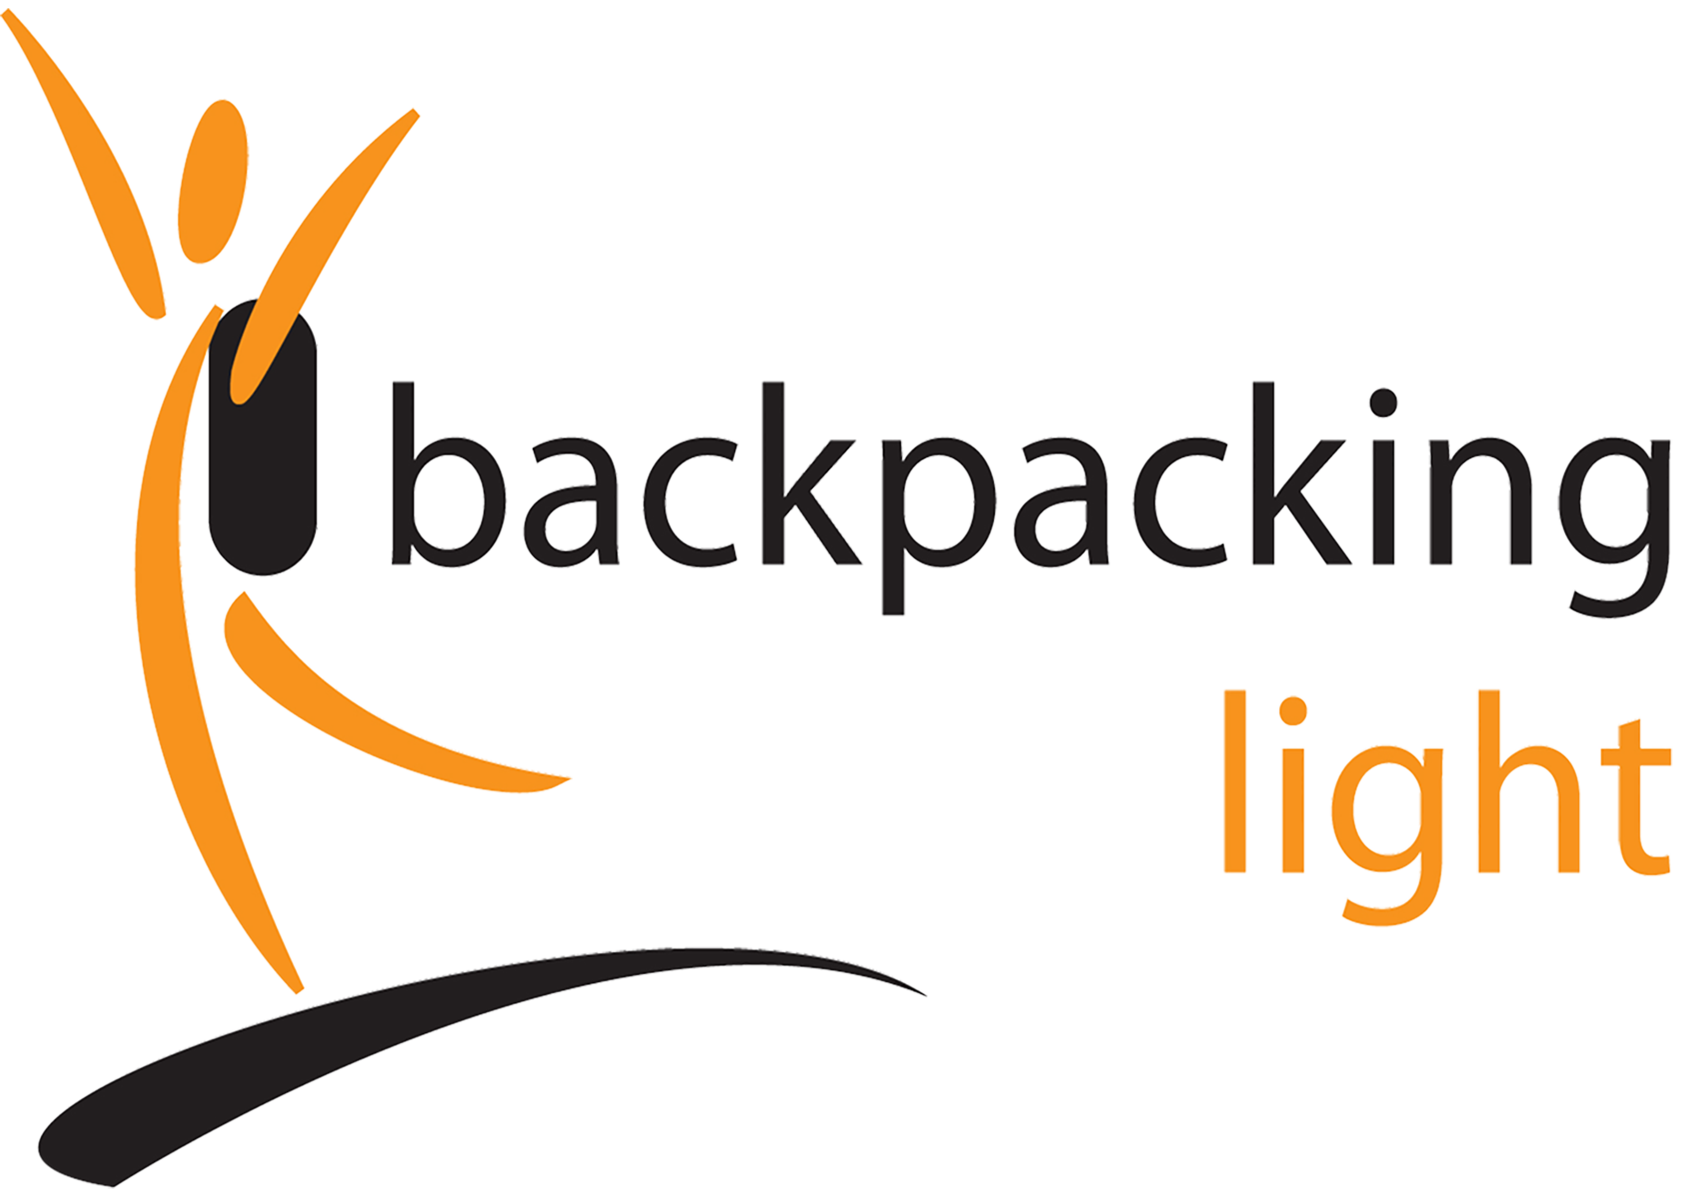 Backpacking Light - Australia